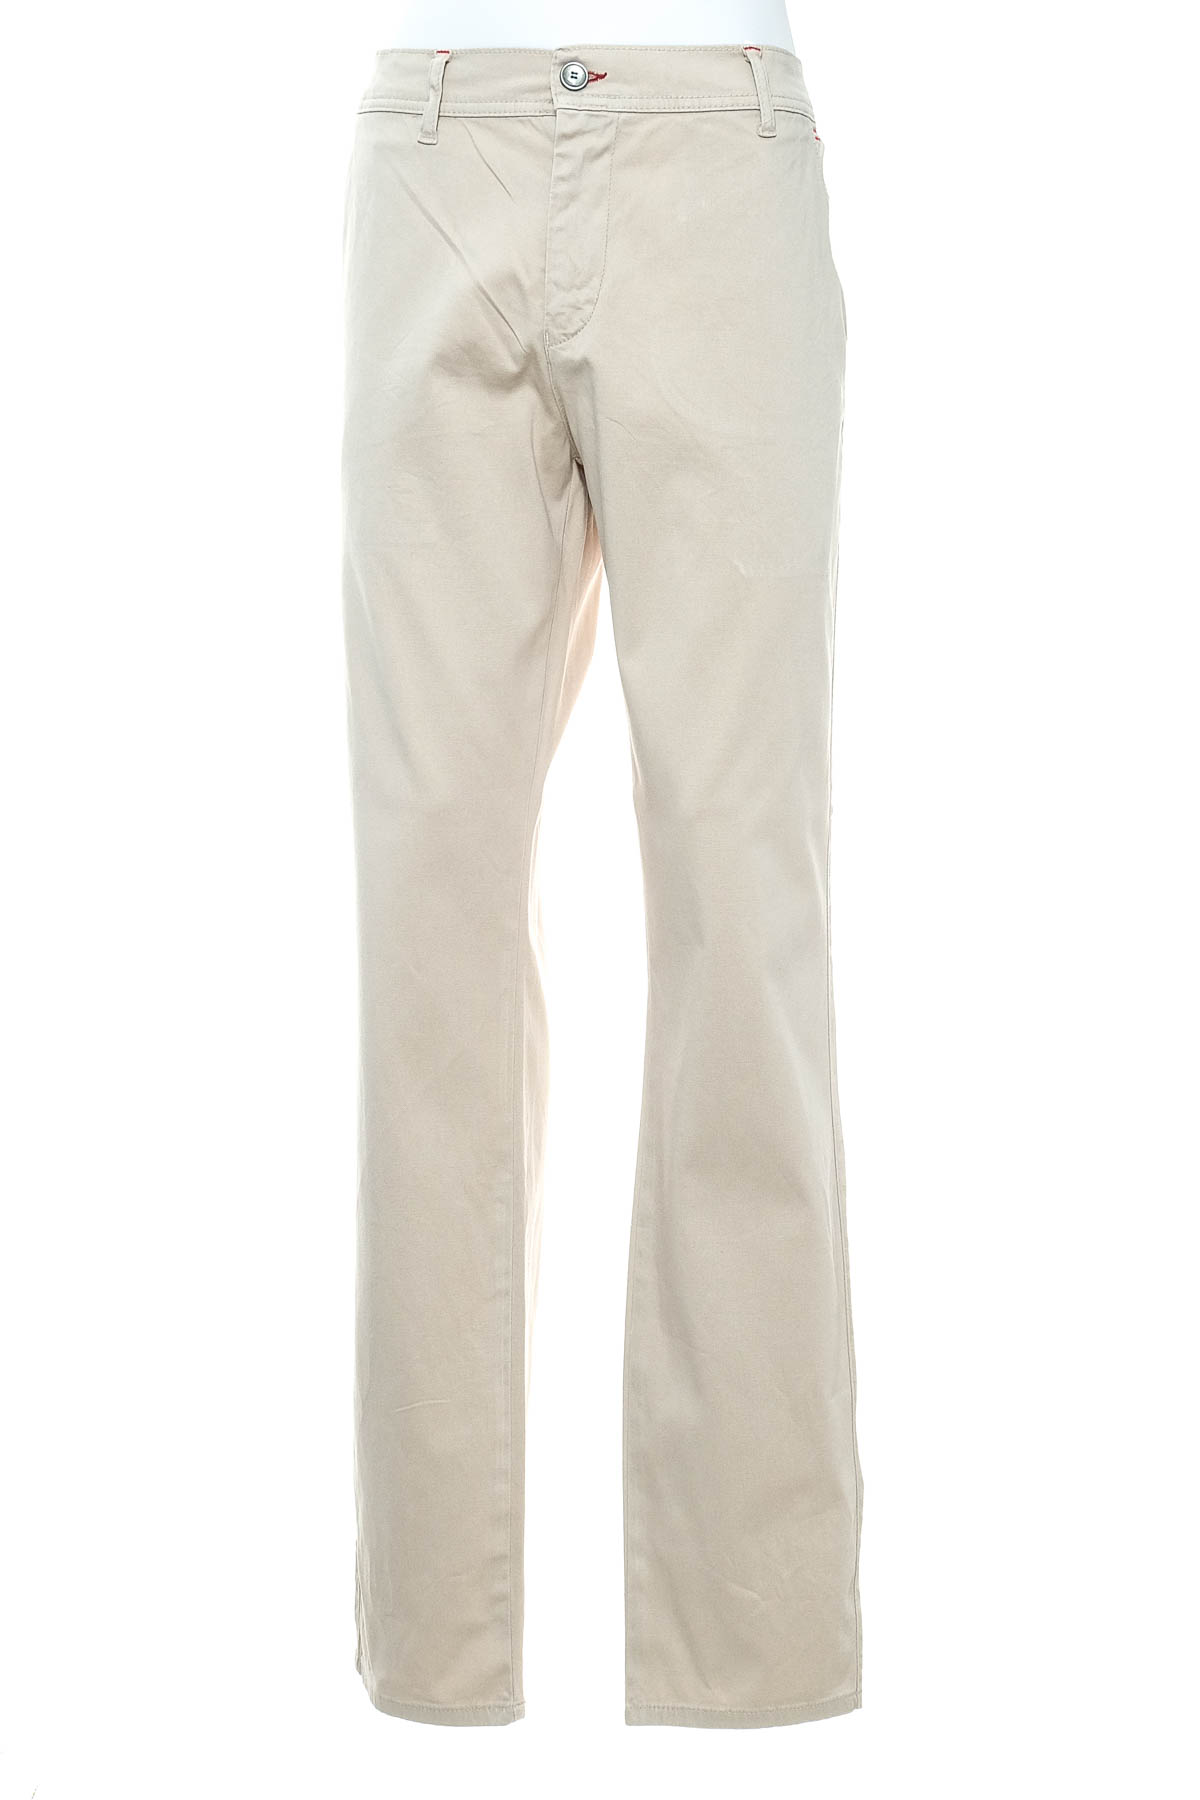 Pantalon pentru bărbați - JIMMY SANDERS - 0